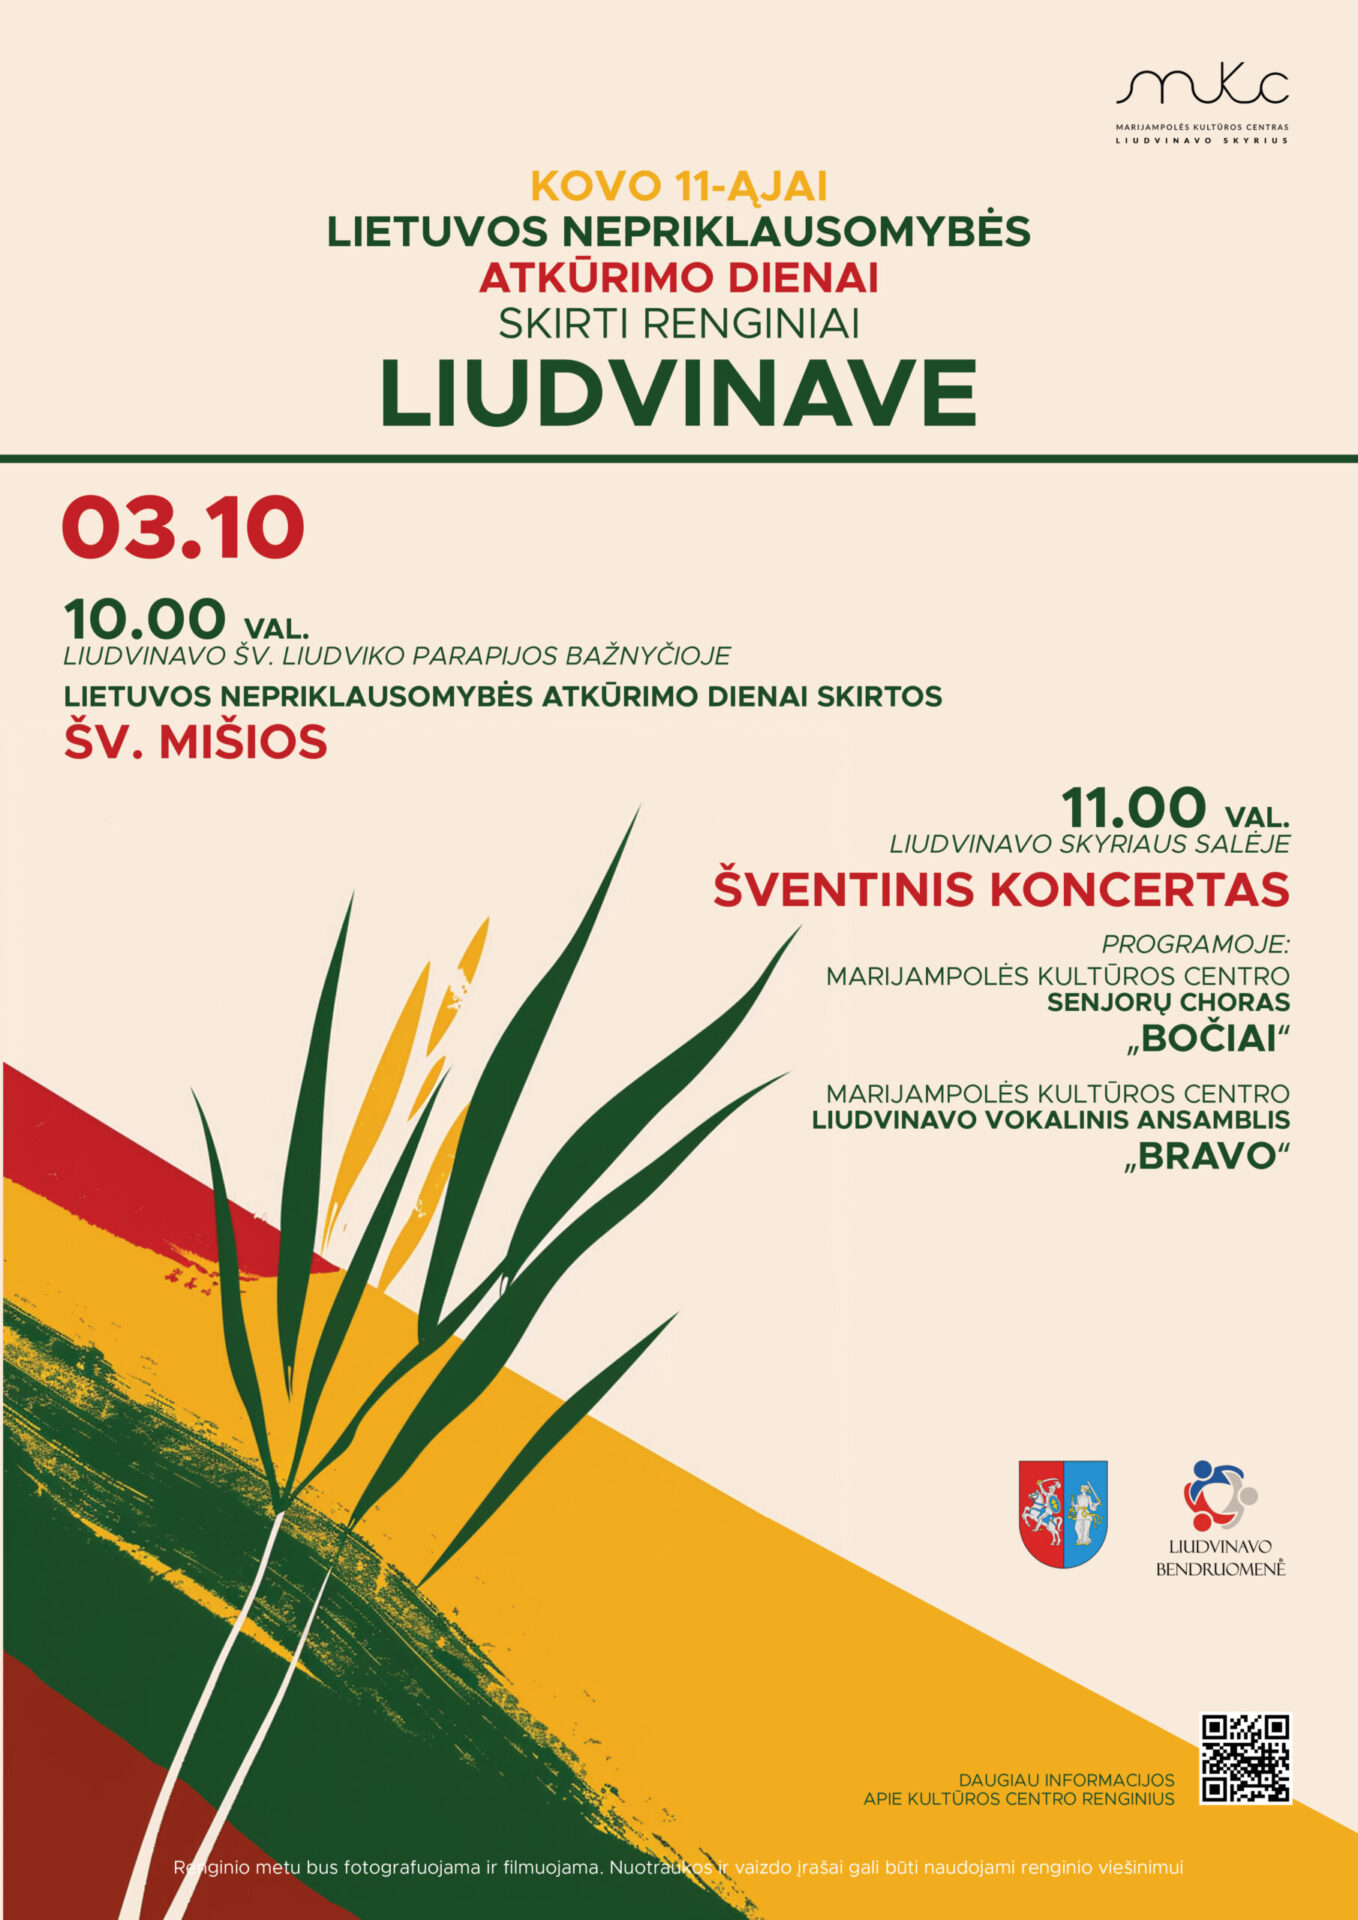 Lietuvos Nepriklausomybės dienos minėjimas | LIUDVINAVAS